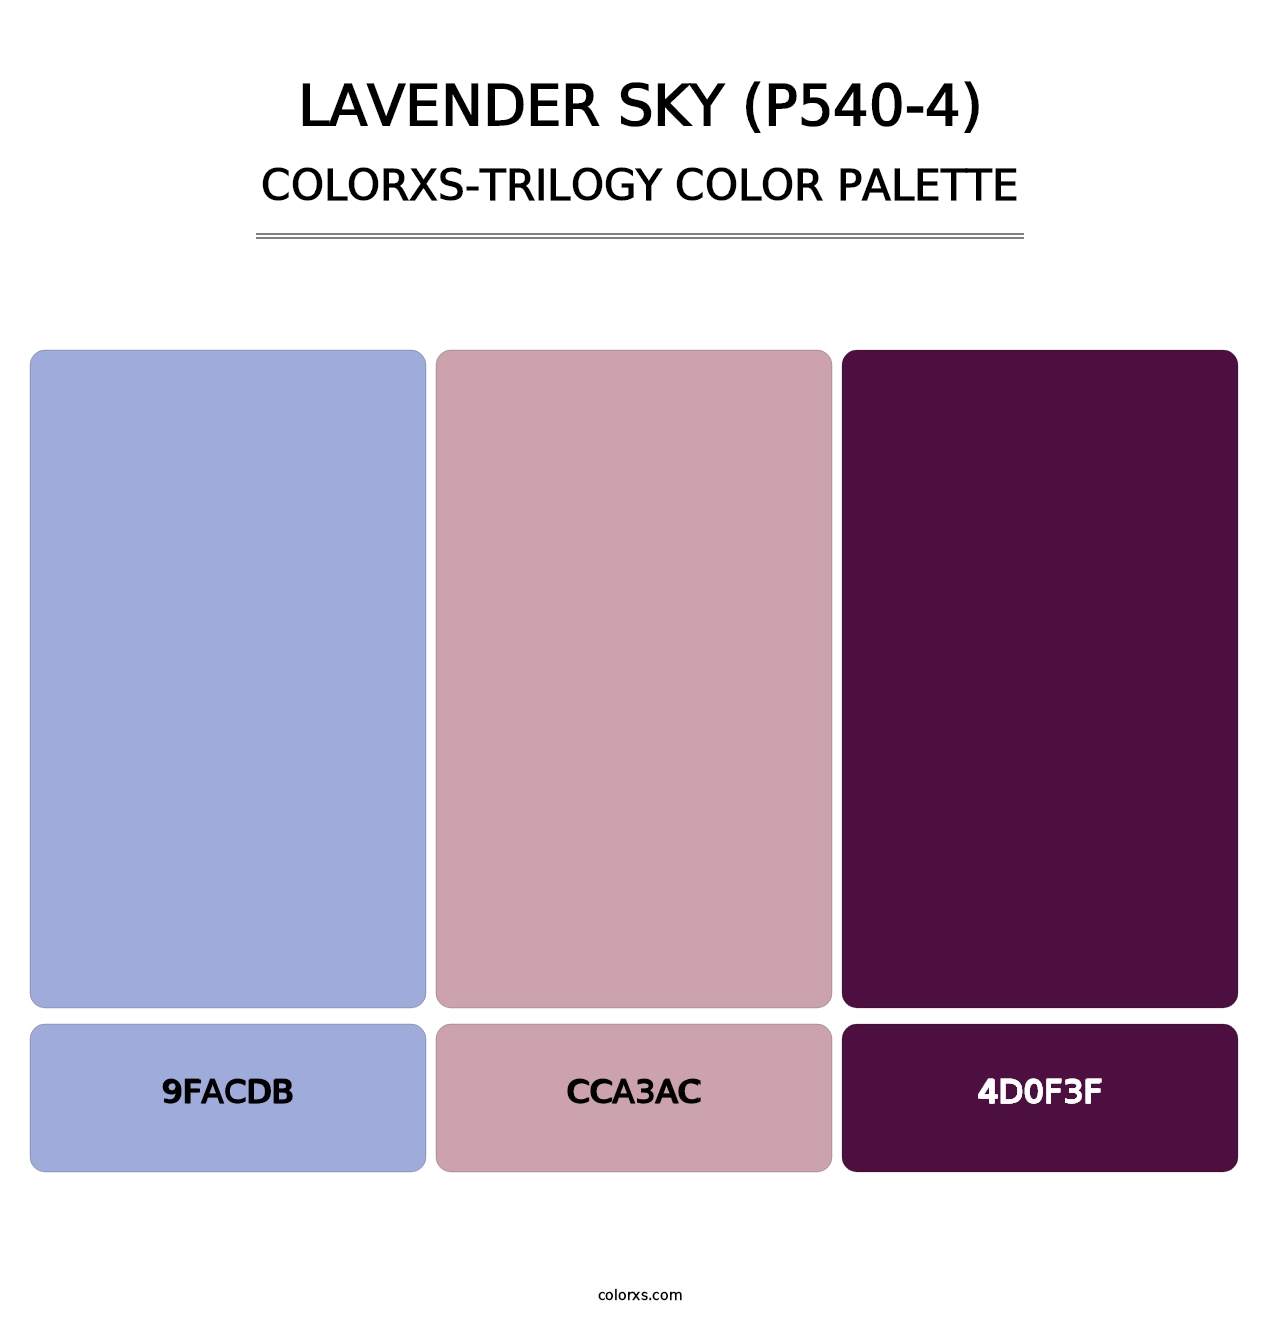 Lavender Sky (P540-4) - Colorxs Trilogy Palette